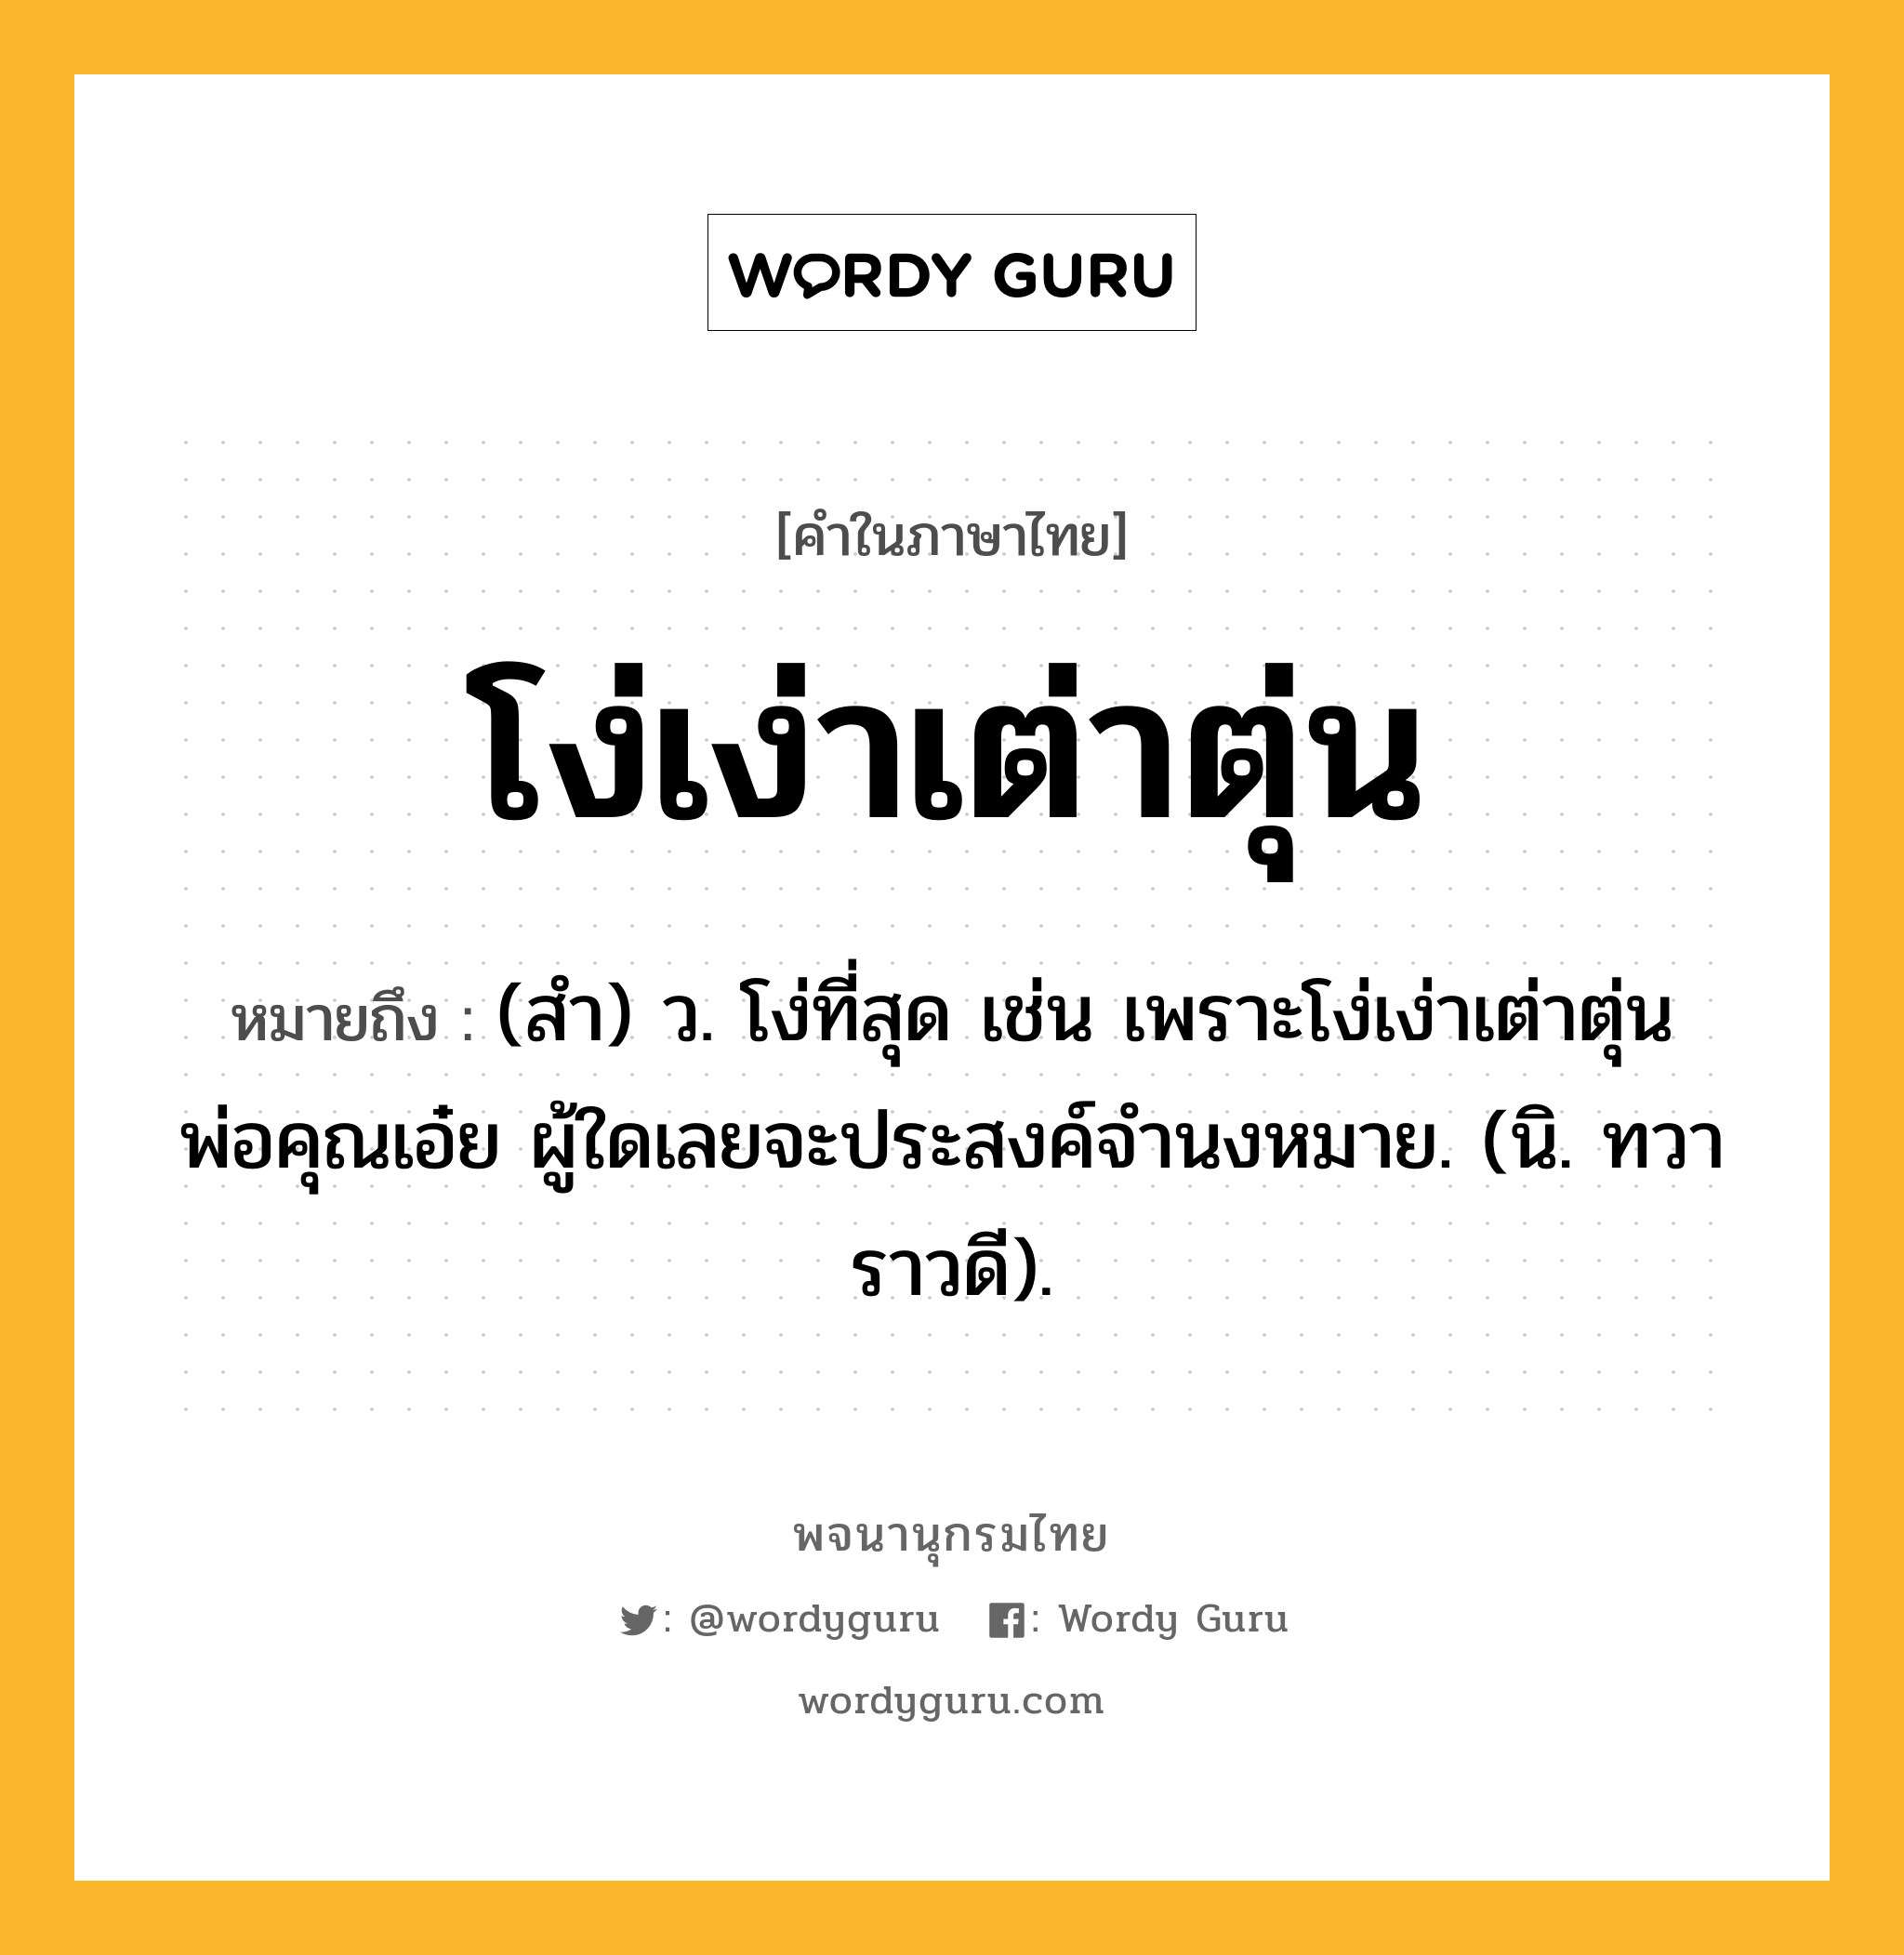 โง่เง่าเต่าตุ่น ความหมาย หมายถึงอะไร?, คำในภาษาไทย โง่เง่าเต่าตุ่น หมายถึง (สํา) ว. โง่ที่สุด เช่น เพราะโง่เง่าเต่าตุ่นพ่อคุณเอ๋ย ผู้ใดเลยจะประสงค์จํานงหมาย. (นิ. ทวาราวดี).